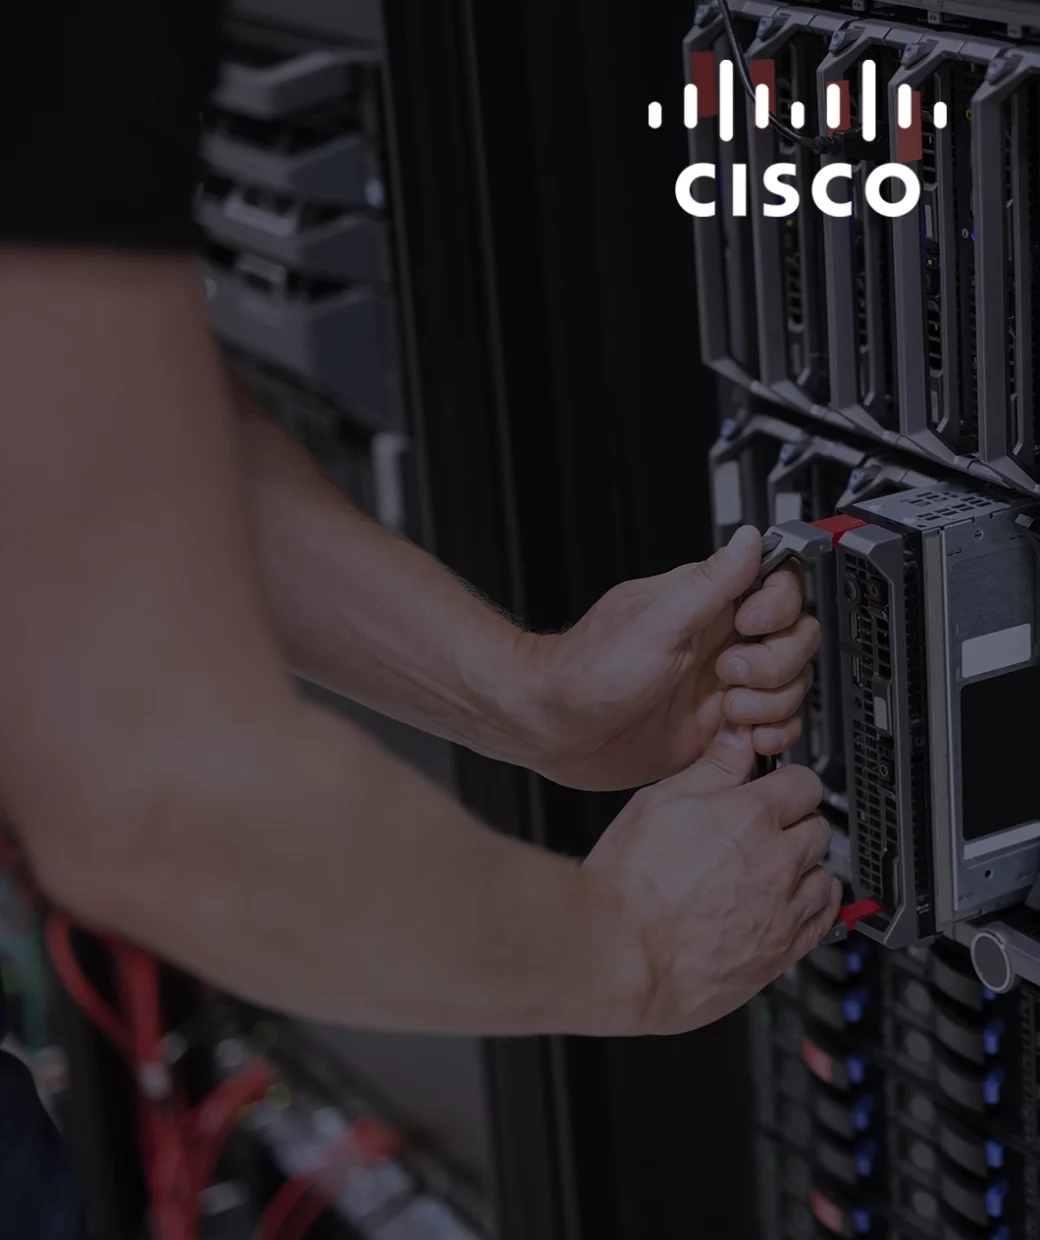 Switch Cisco es usado por ser marca líder en equipo de infraestructura de TI de la cual icorp es partner oficial en México